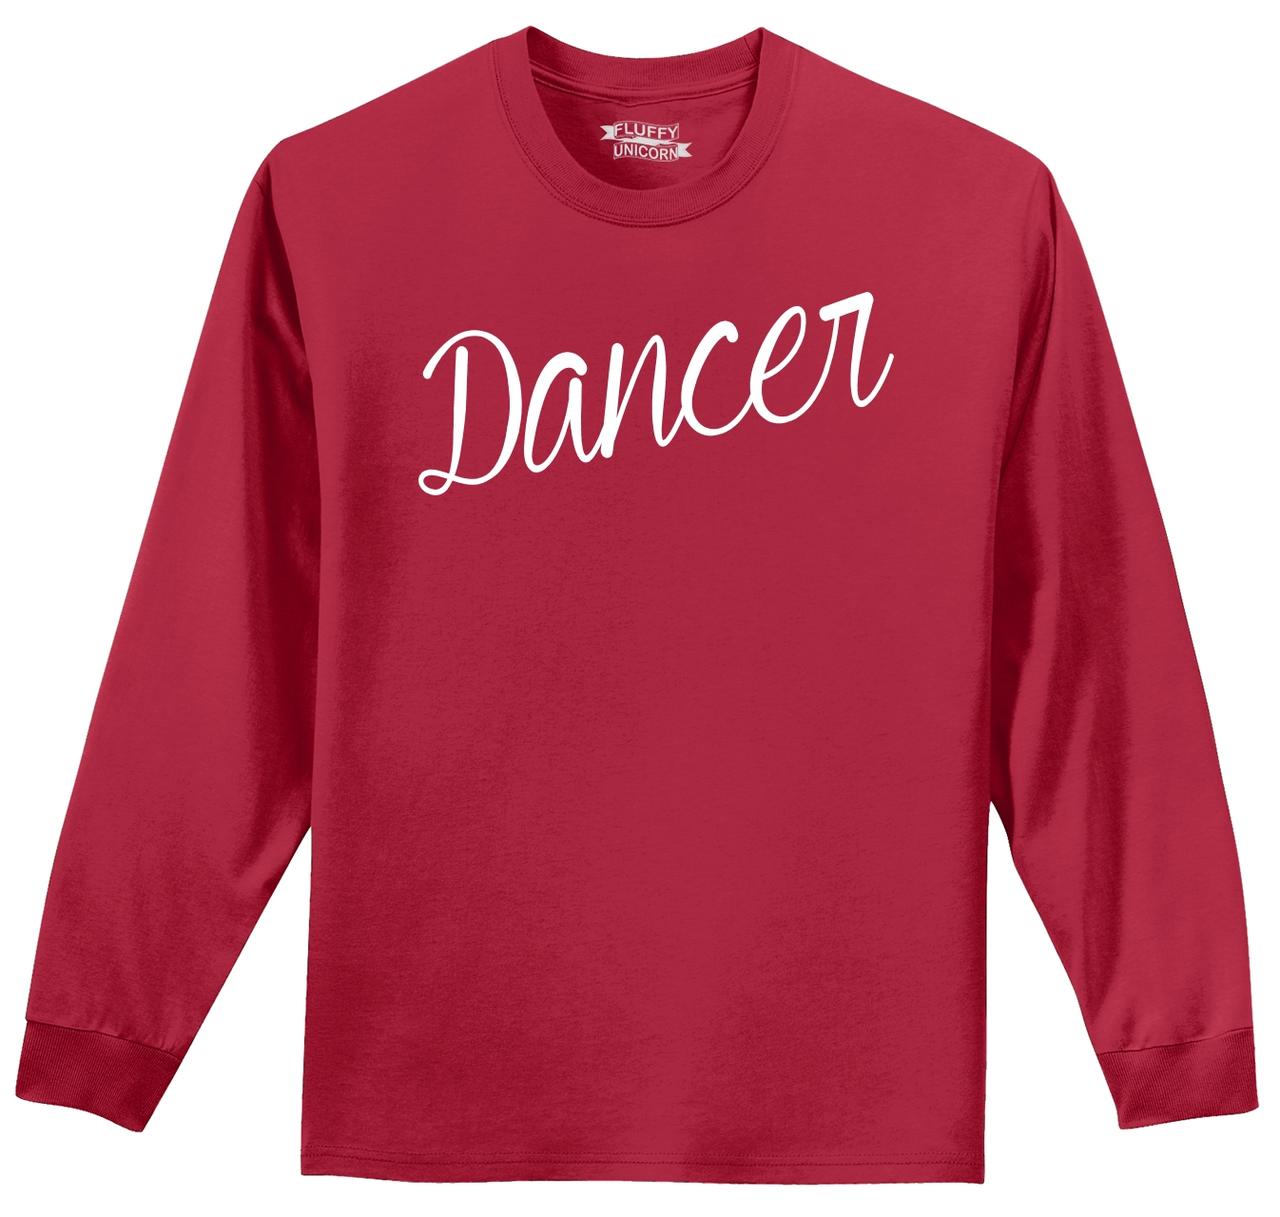 Dancer Long Sleeve T Shirt Dancer Gift Dance School Tee Shirt Z1 | eBay